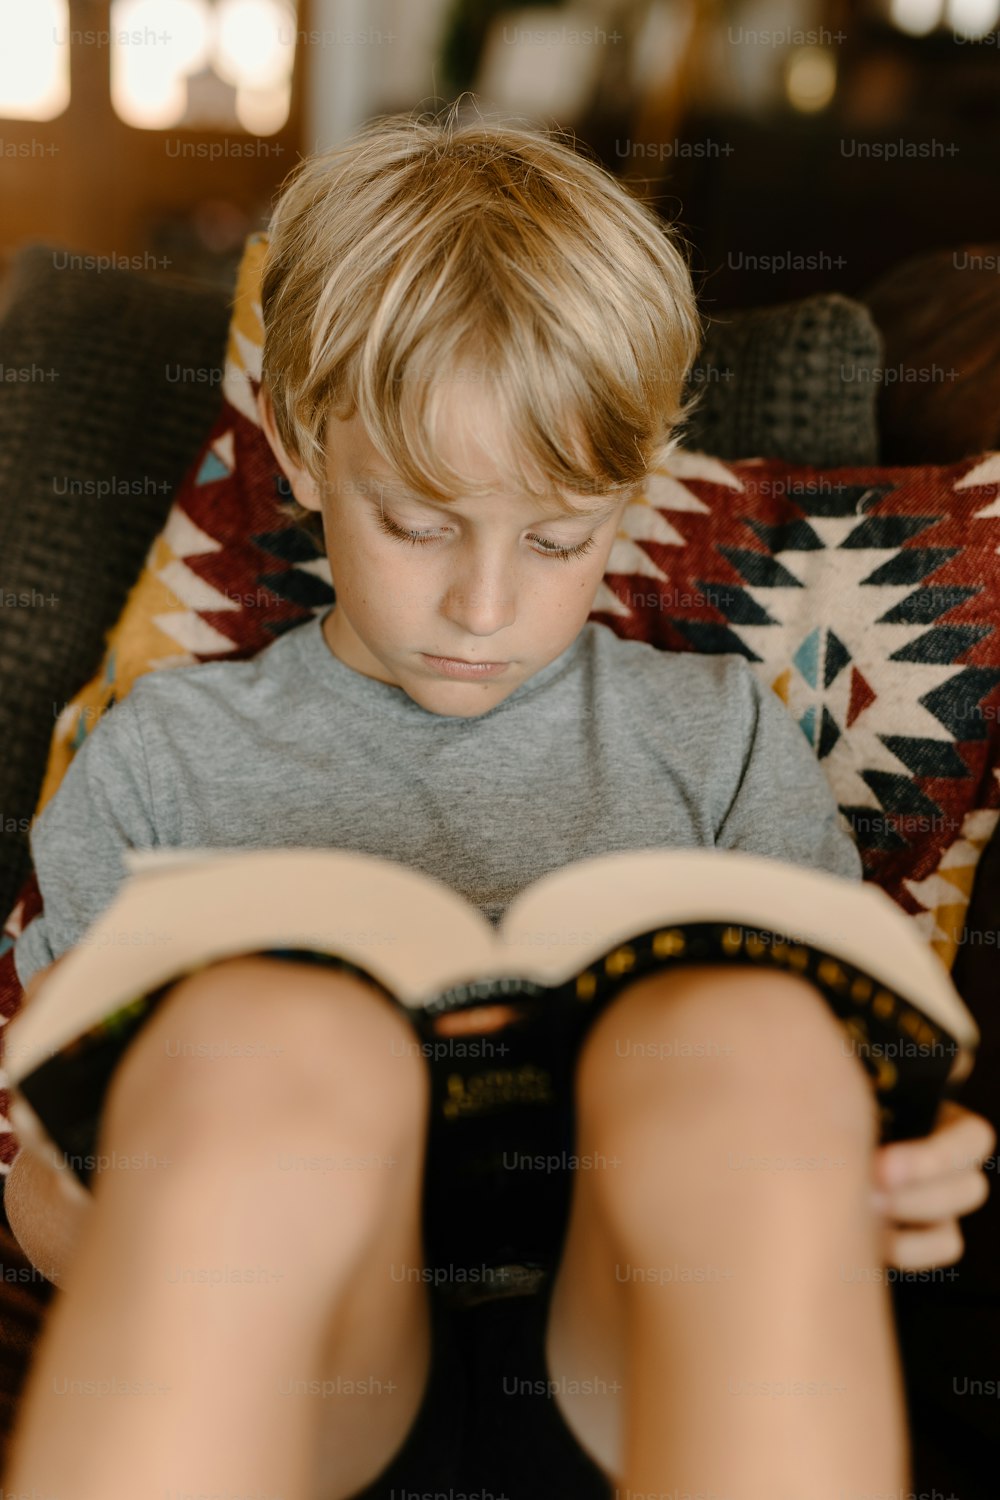 ソファに座って本を読む少年